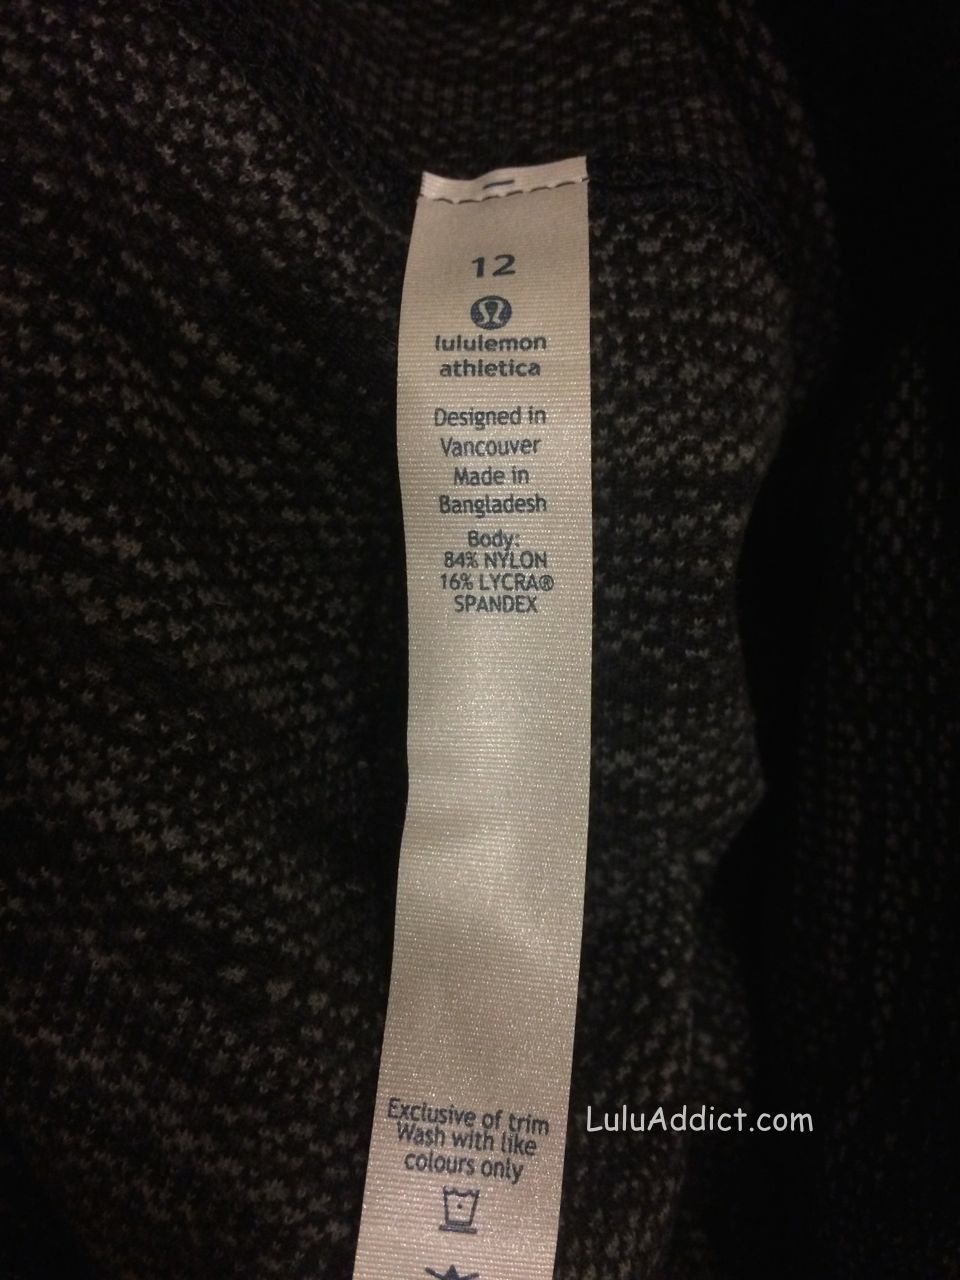 lululemon fabric tag